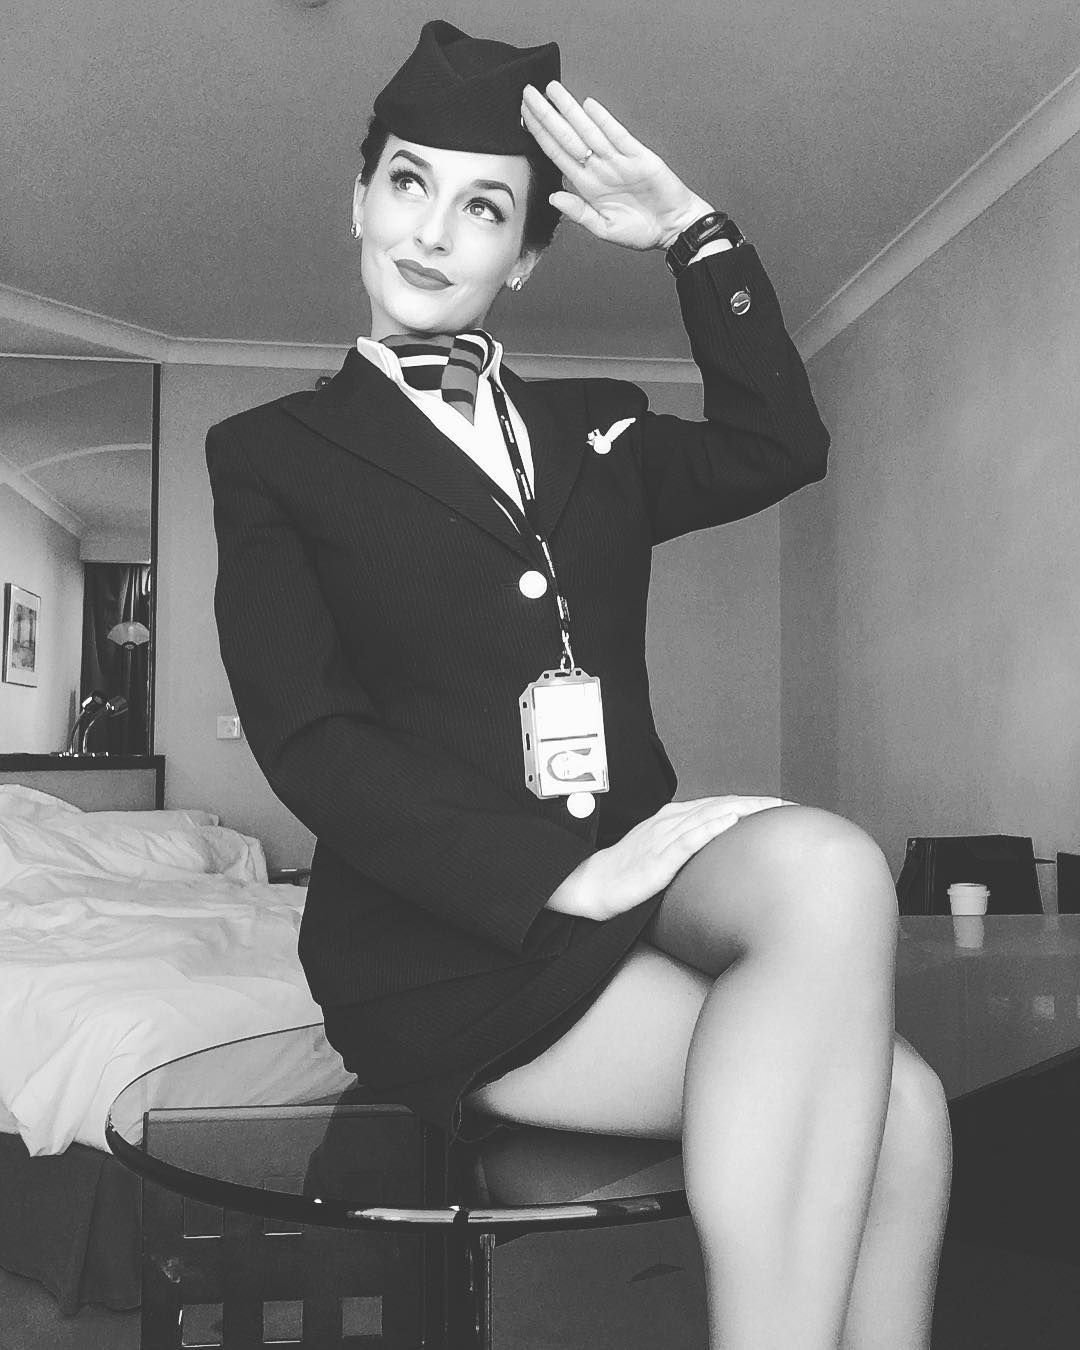 Сексуальные стюардессы фото